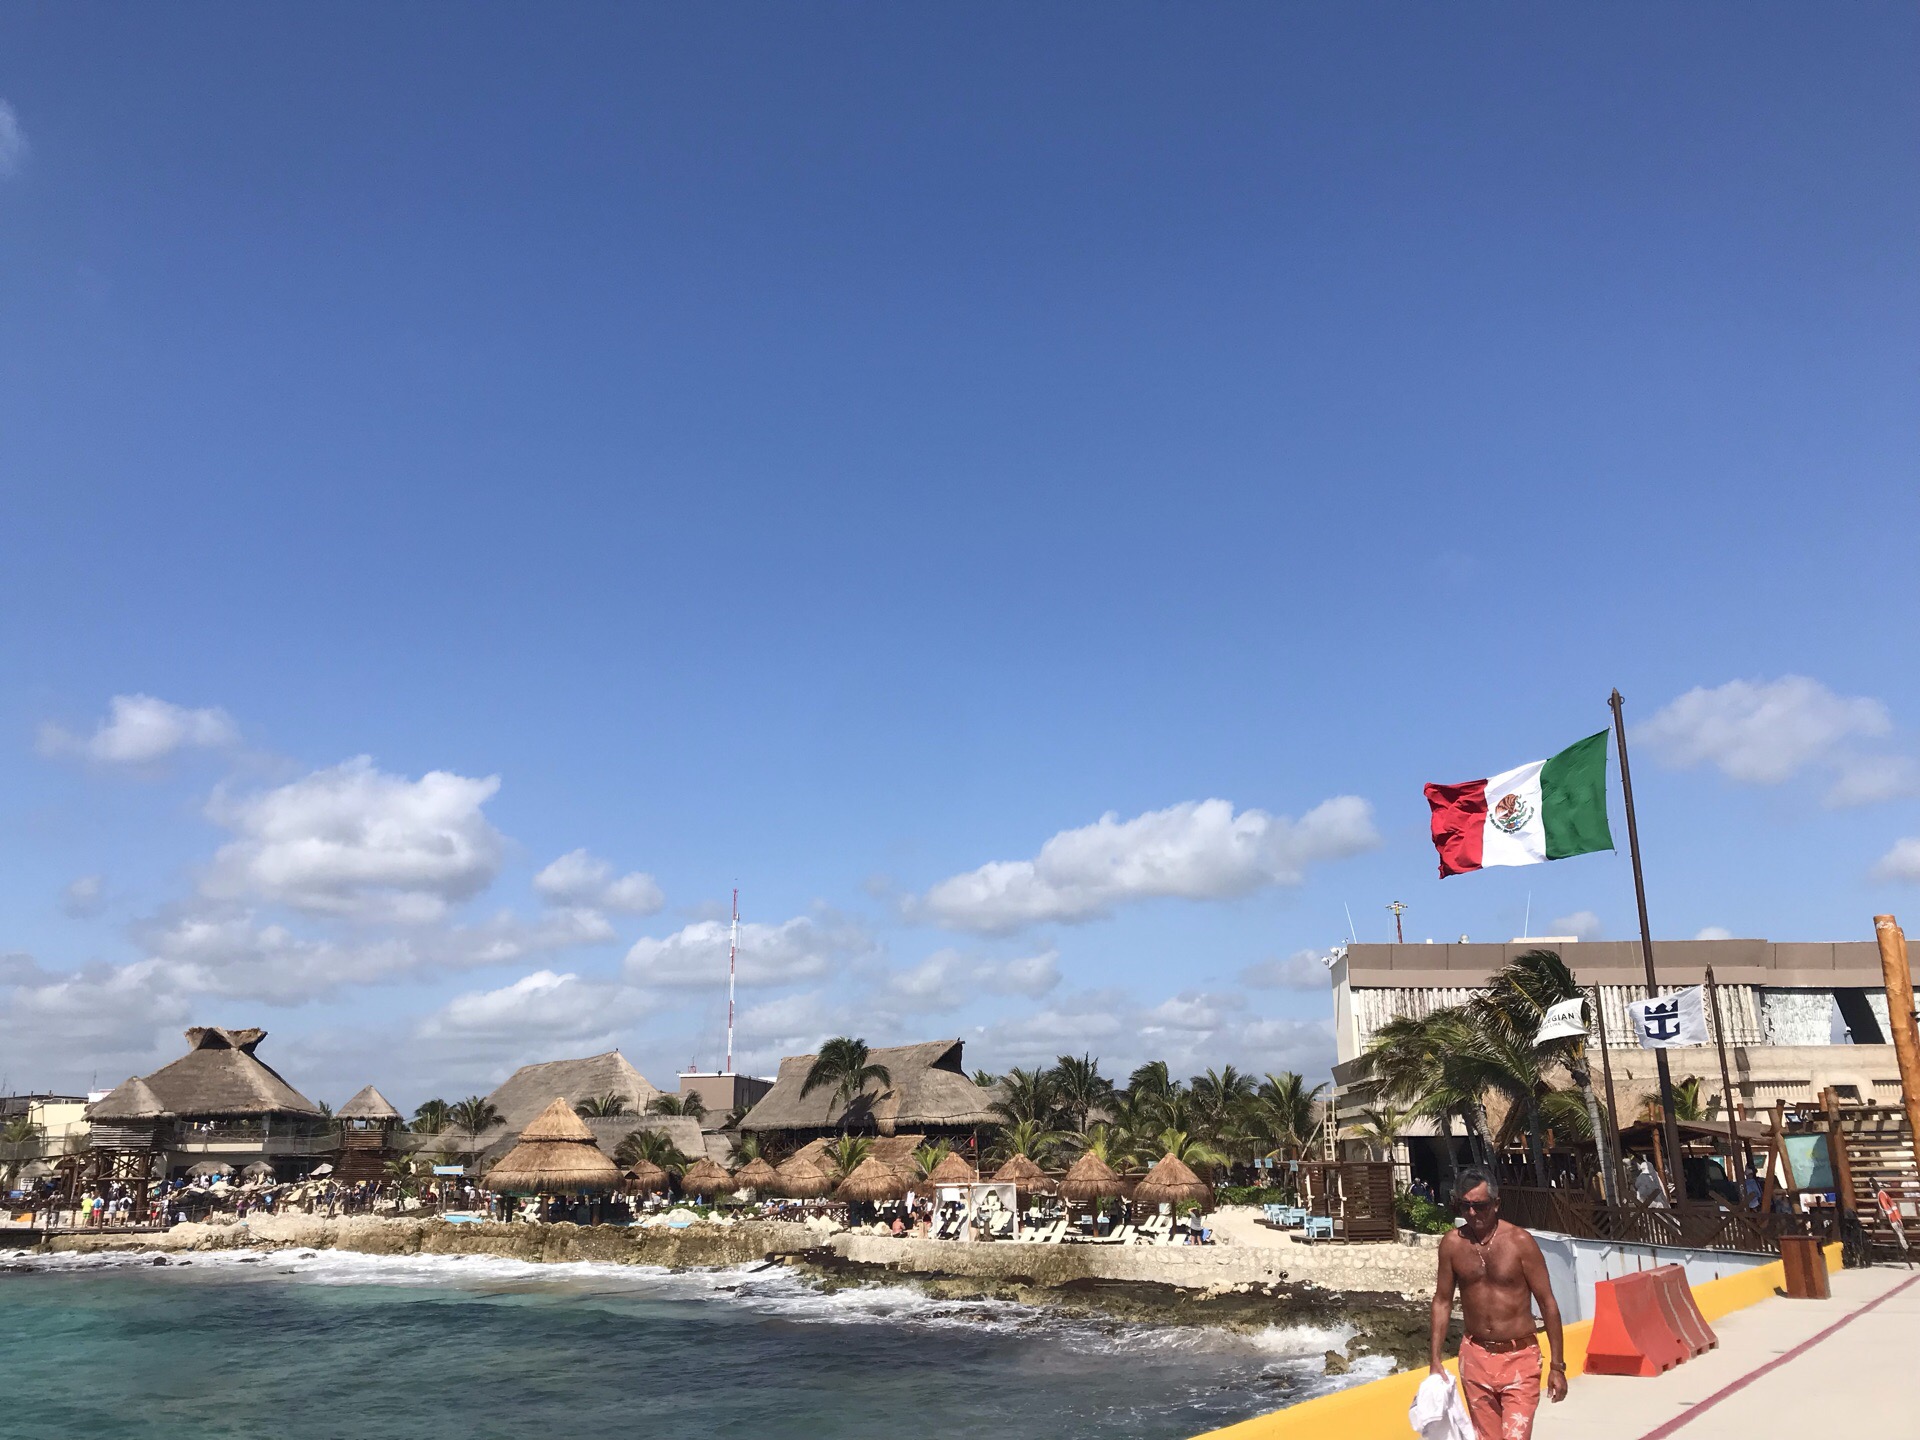 邮轮最后一个停泊岛墨西哥的科斯特玛雅。景色依然秀丽，看海豚、看火烈鸟、看摔跤、看海盗文化，然后回家。